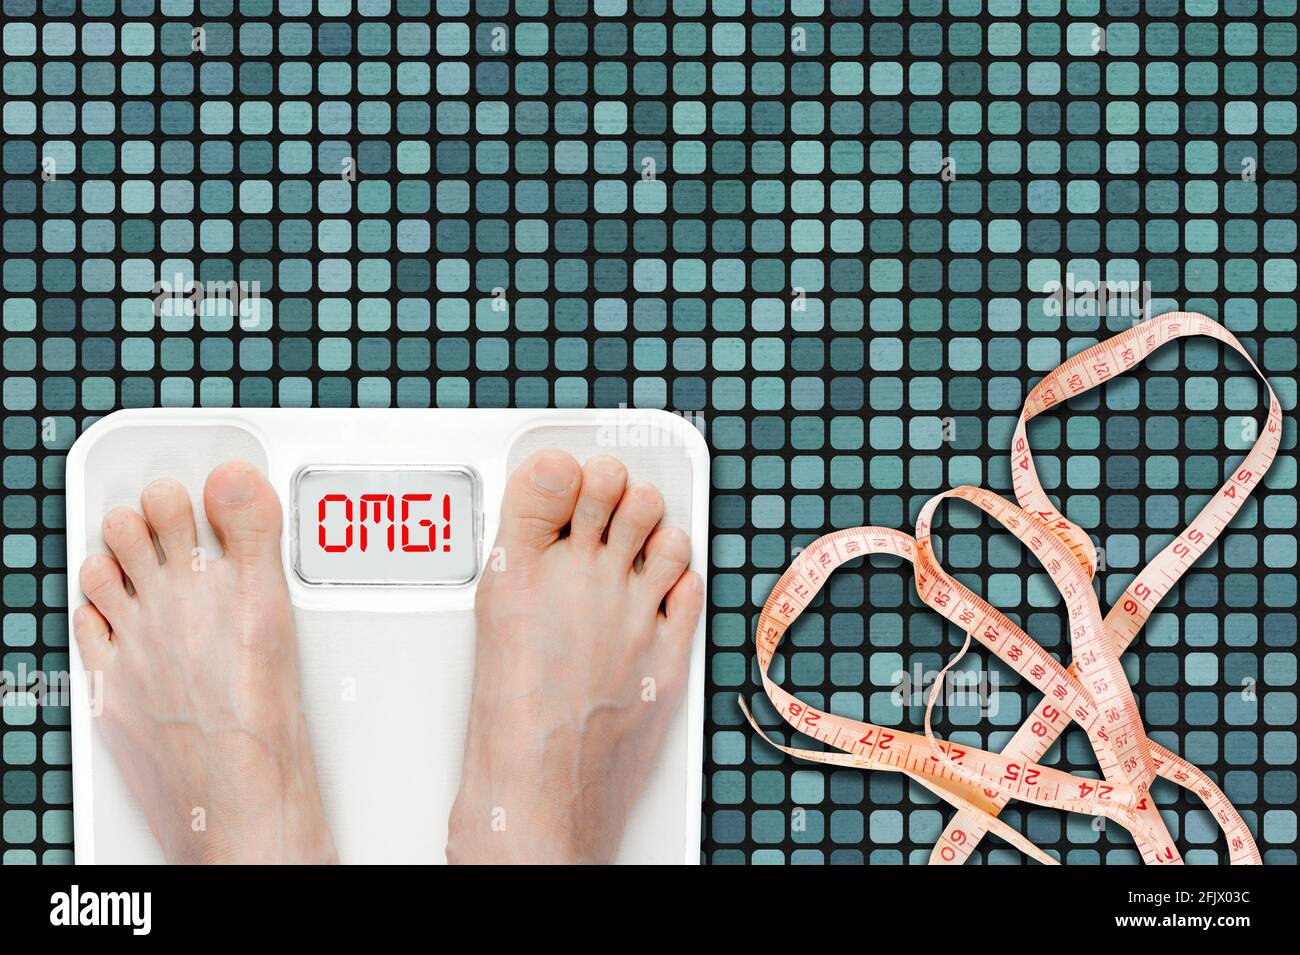 Frau auf Badezimmerwaage mit OMG-Nachricht. Konzept von Übergewicht, Adipositas oder ungesunder Lebensweise mit Maßband auf dem Badezimmerboden. Stockfoto